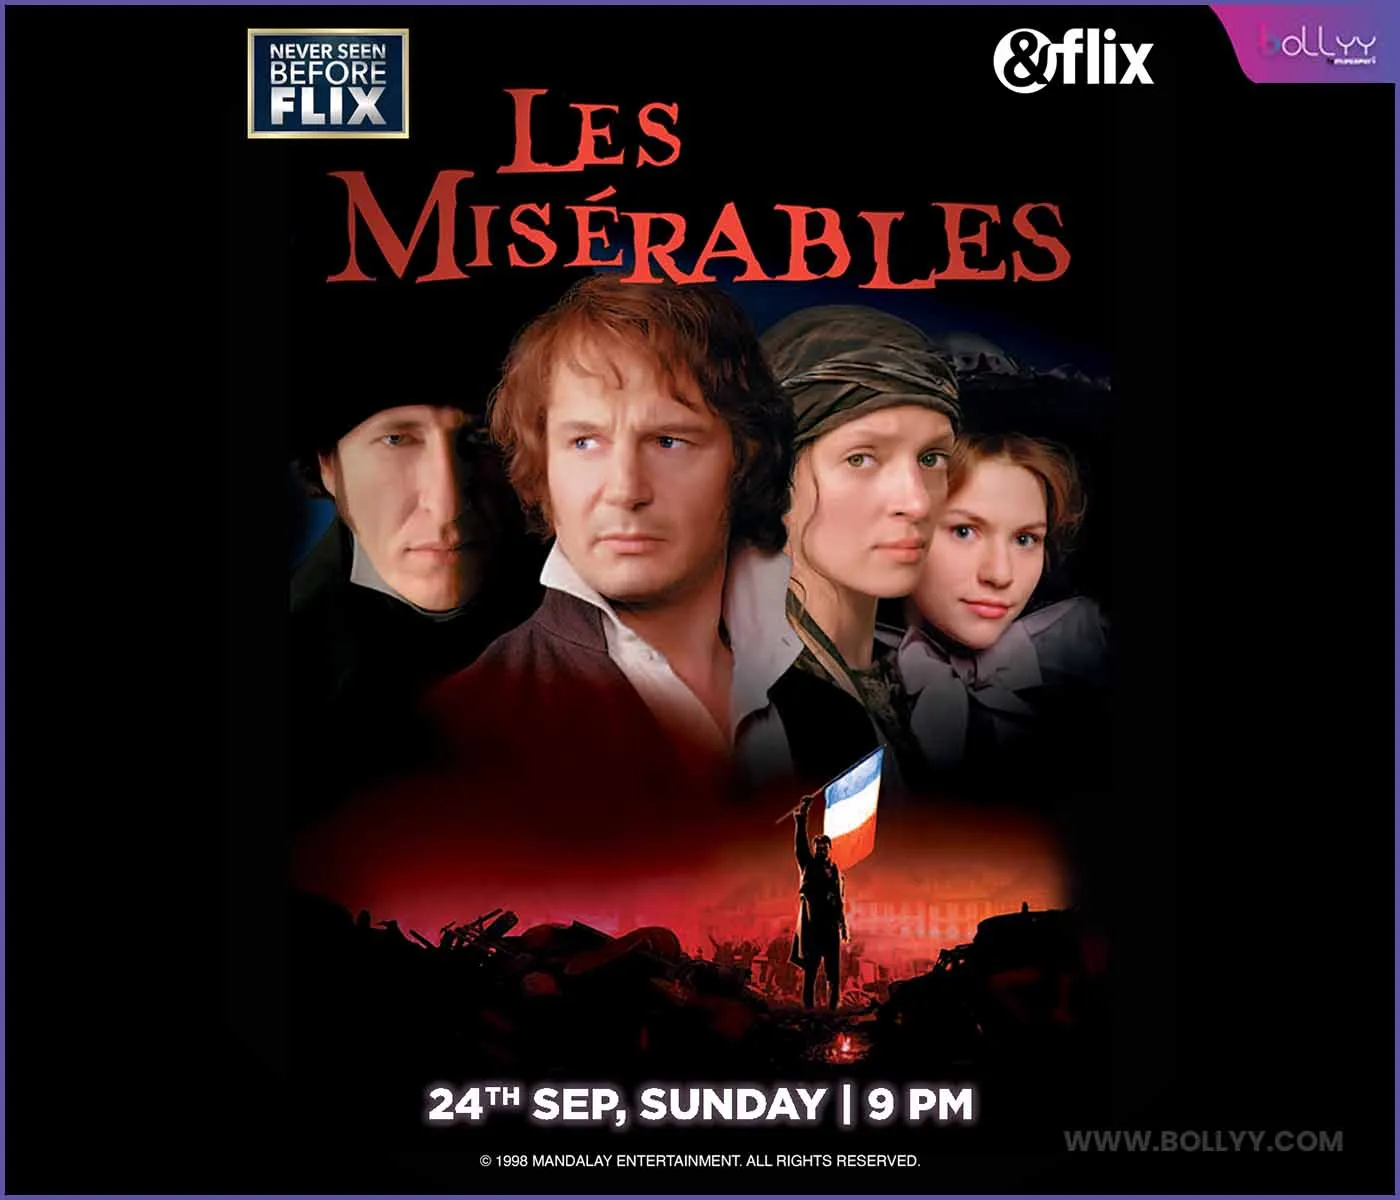 &flix brings Les Misérables